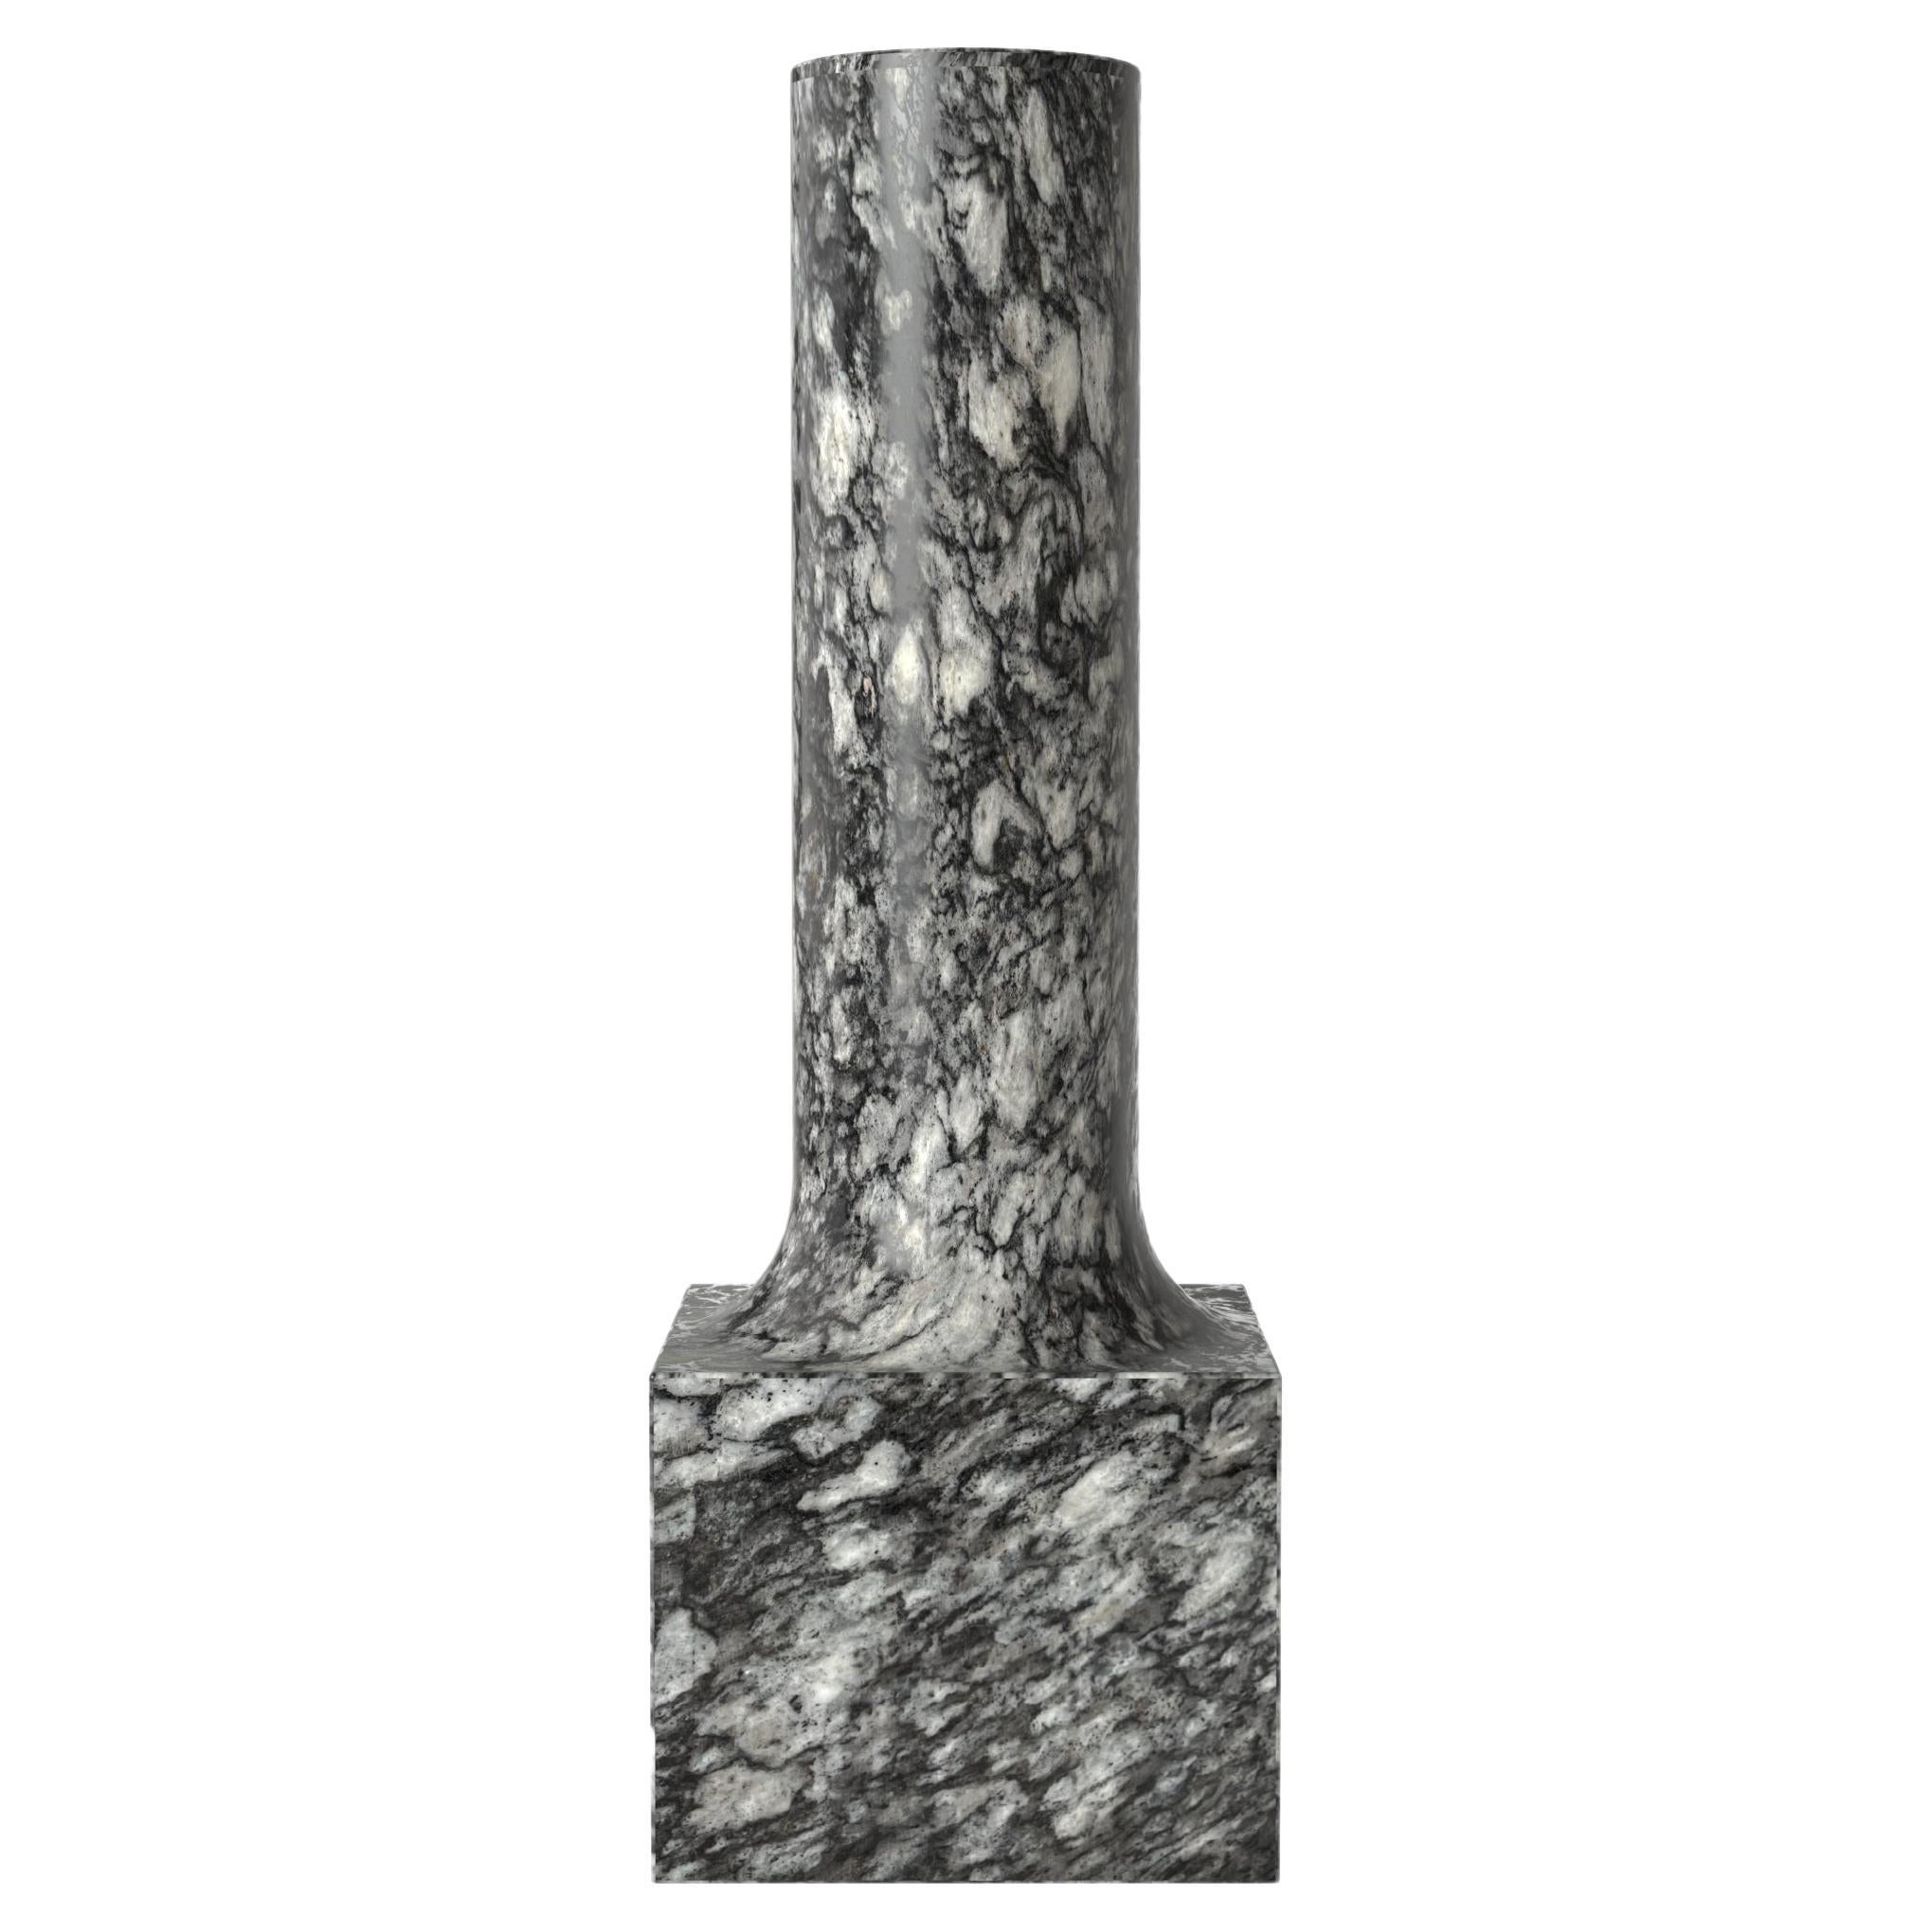 Zeitgenössische Granit-Steinvase in limitierter Auflage, Palazzo V2 von Edizione Limitata